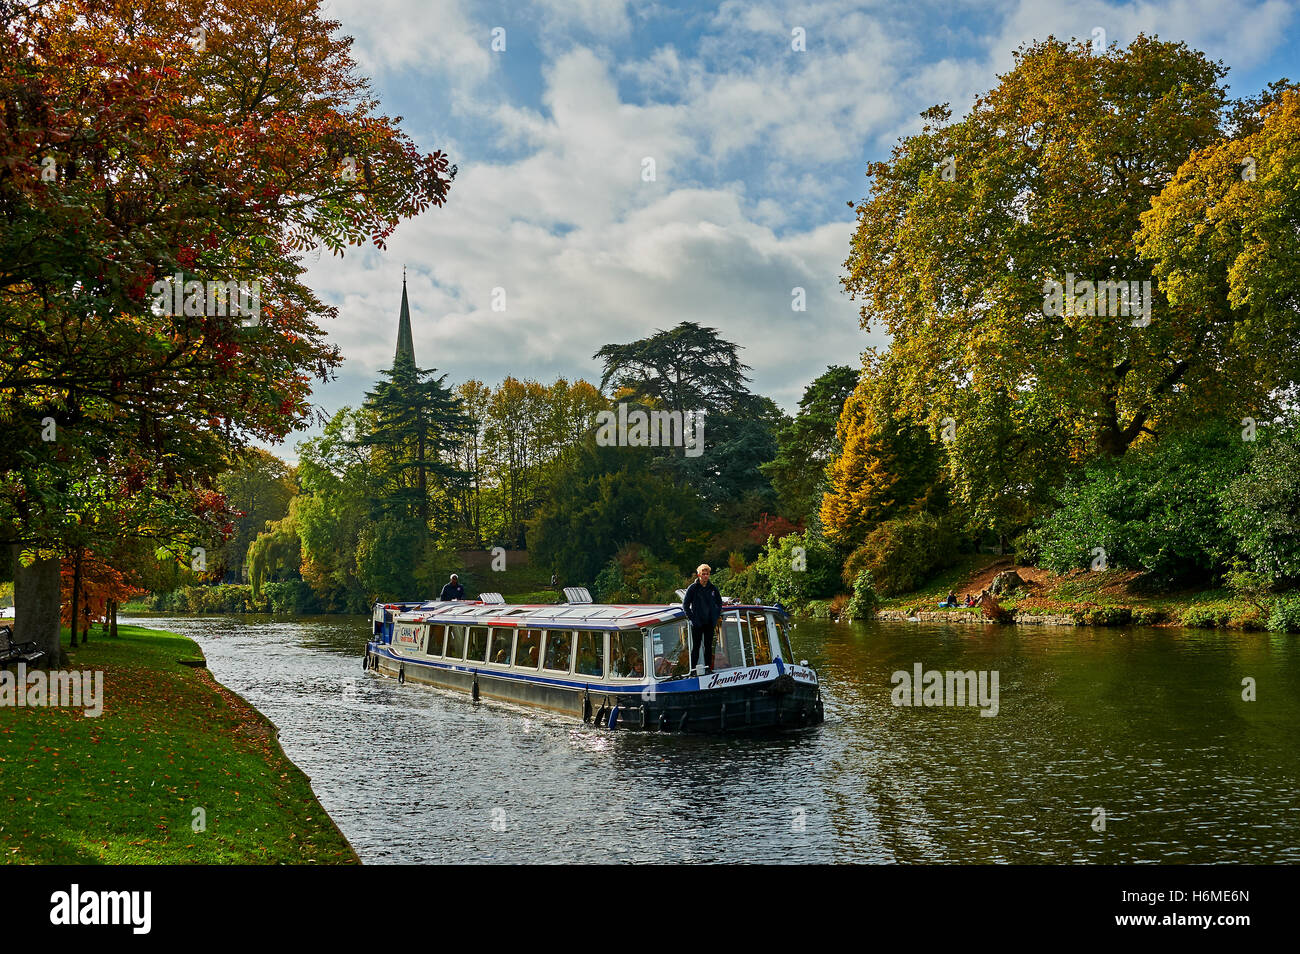 Plaisir cruiser sur la rivière Avon à Stratford upon Avon, avec des couleurs automnales sur les arbres. Banque D'Images